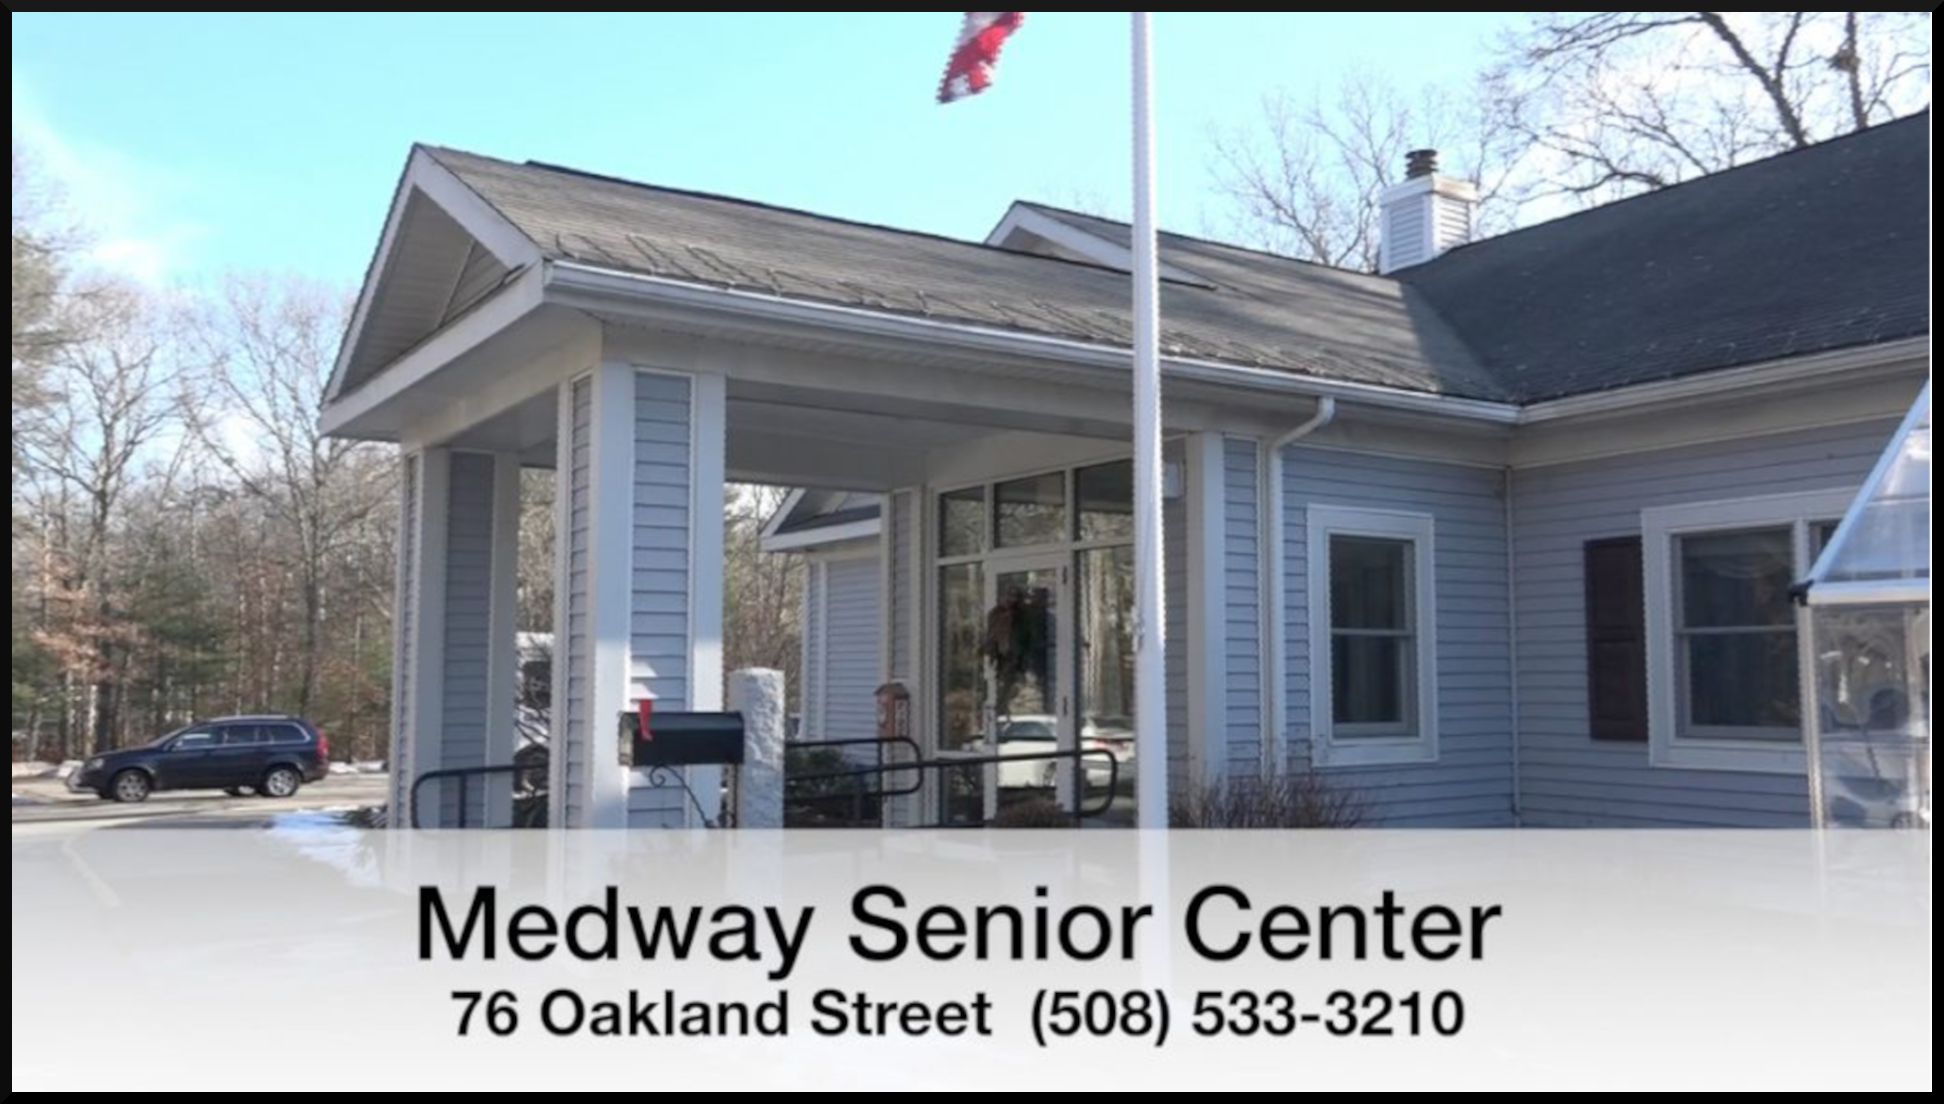 Medway Senior Center